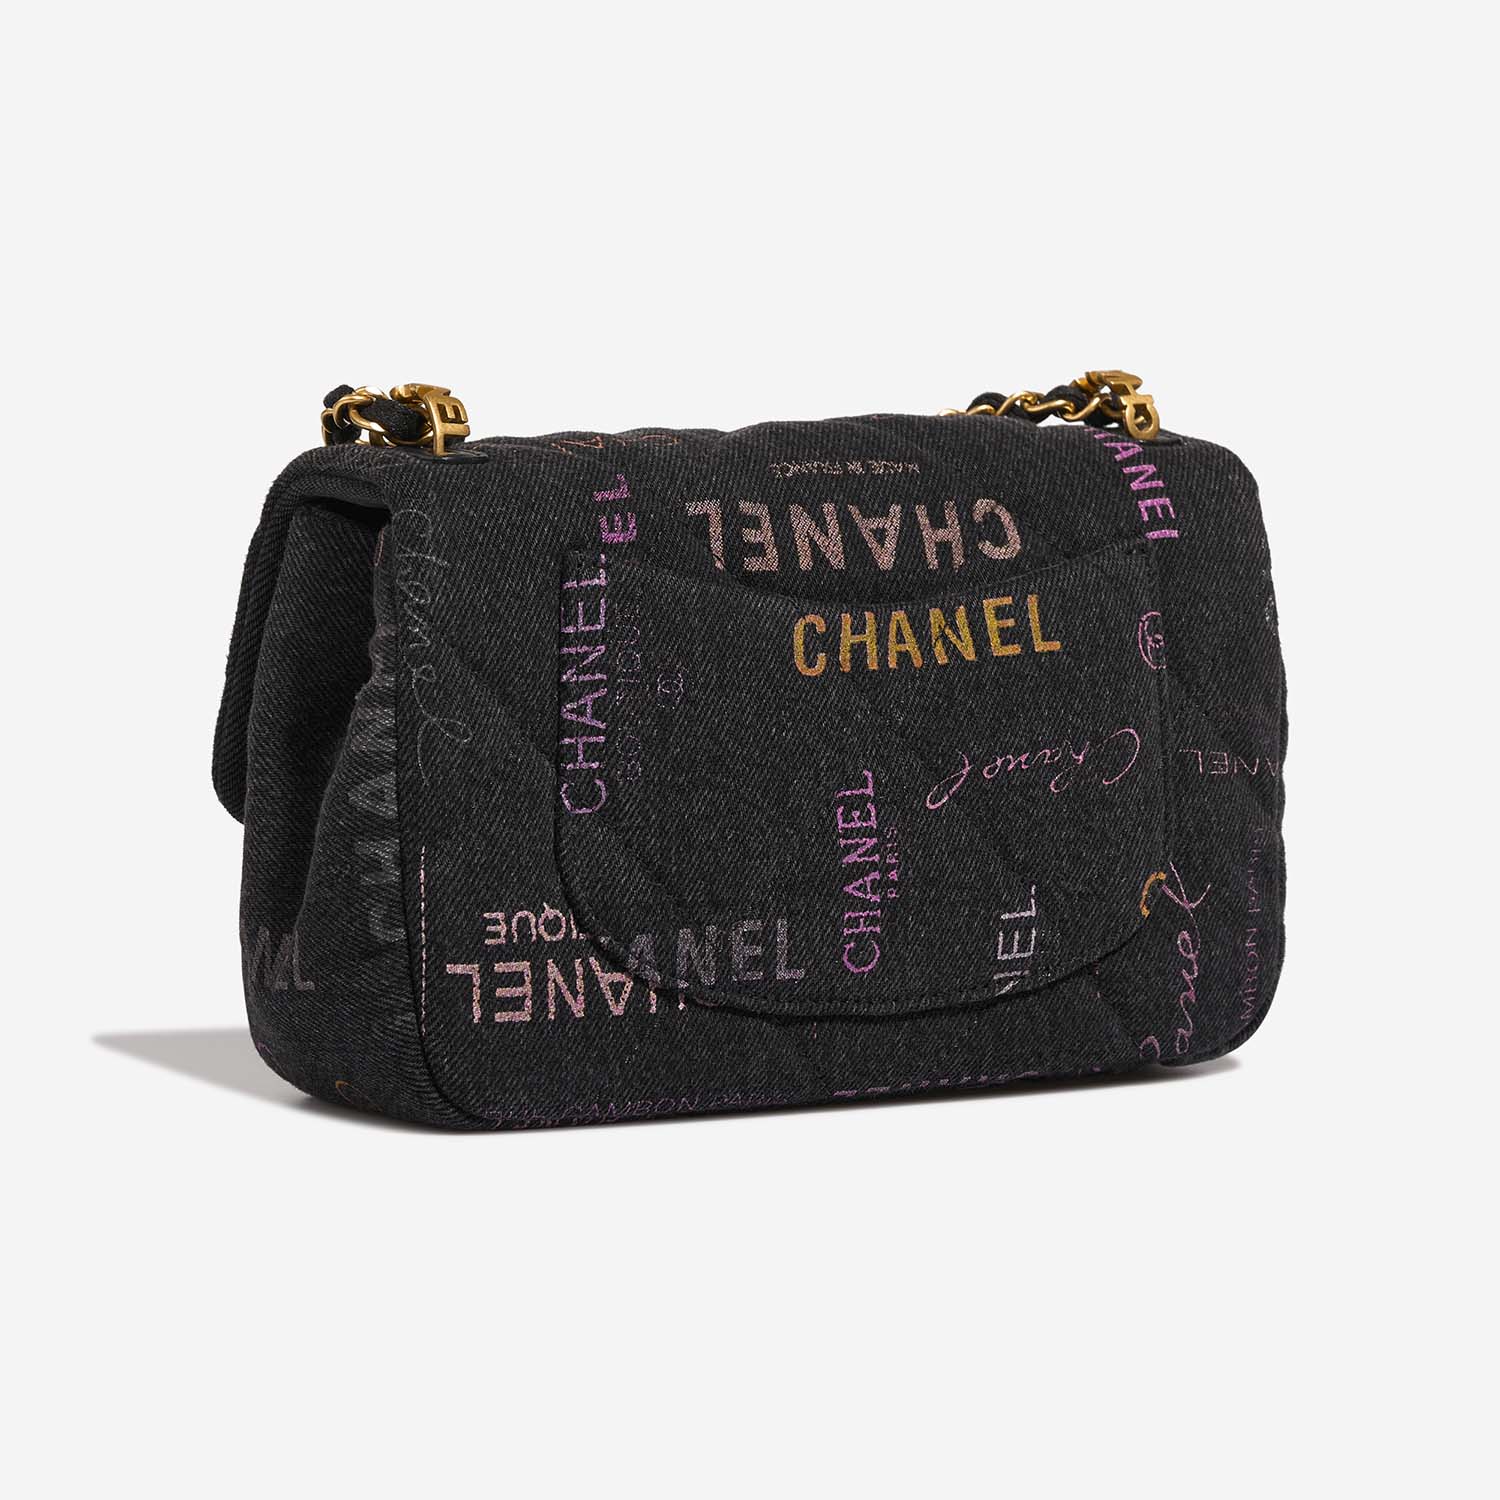 Chanel Timeless Small Multicolor Side Back | Verkaufen Sie Ihre Designer-Tasche auf Saclab.com